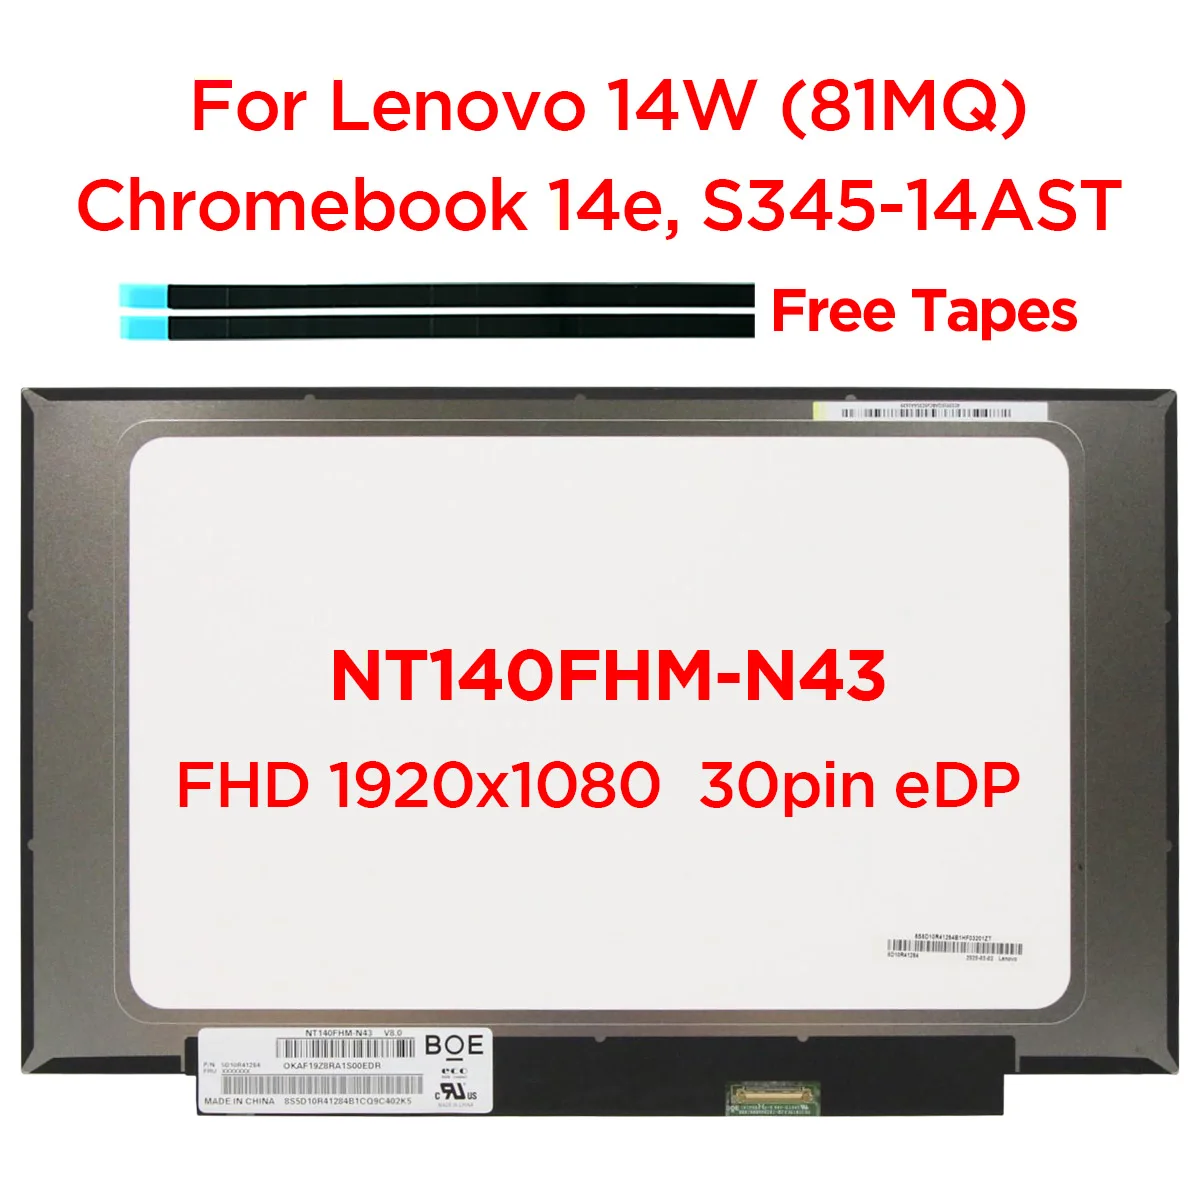 Pantalla LCD delgada de 14,0 pulgadas para ordenador portátil, NT140FHM-N43 NT140FHM N44 N32 N45 para Lenovo 14W Chromebook 14e S345-14AST FHD1920x1080 30pin eDP